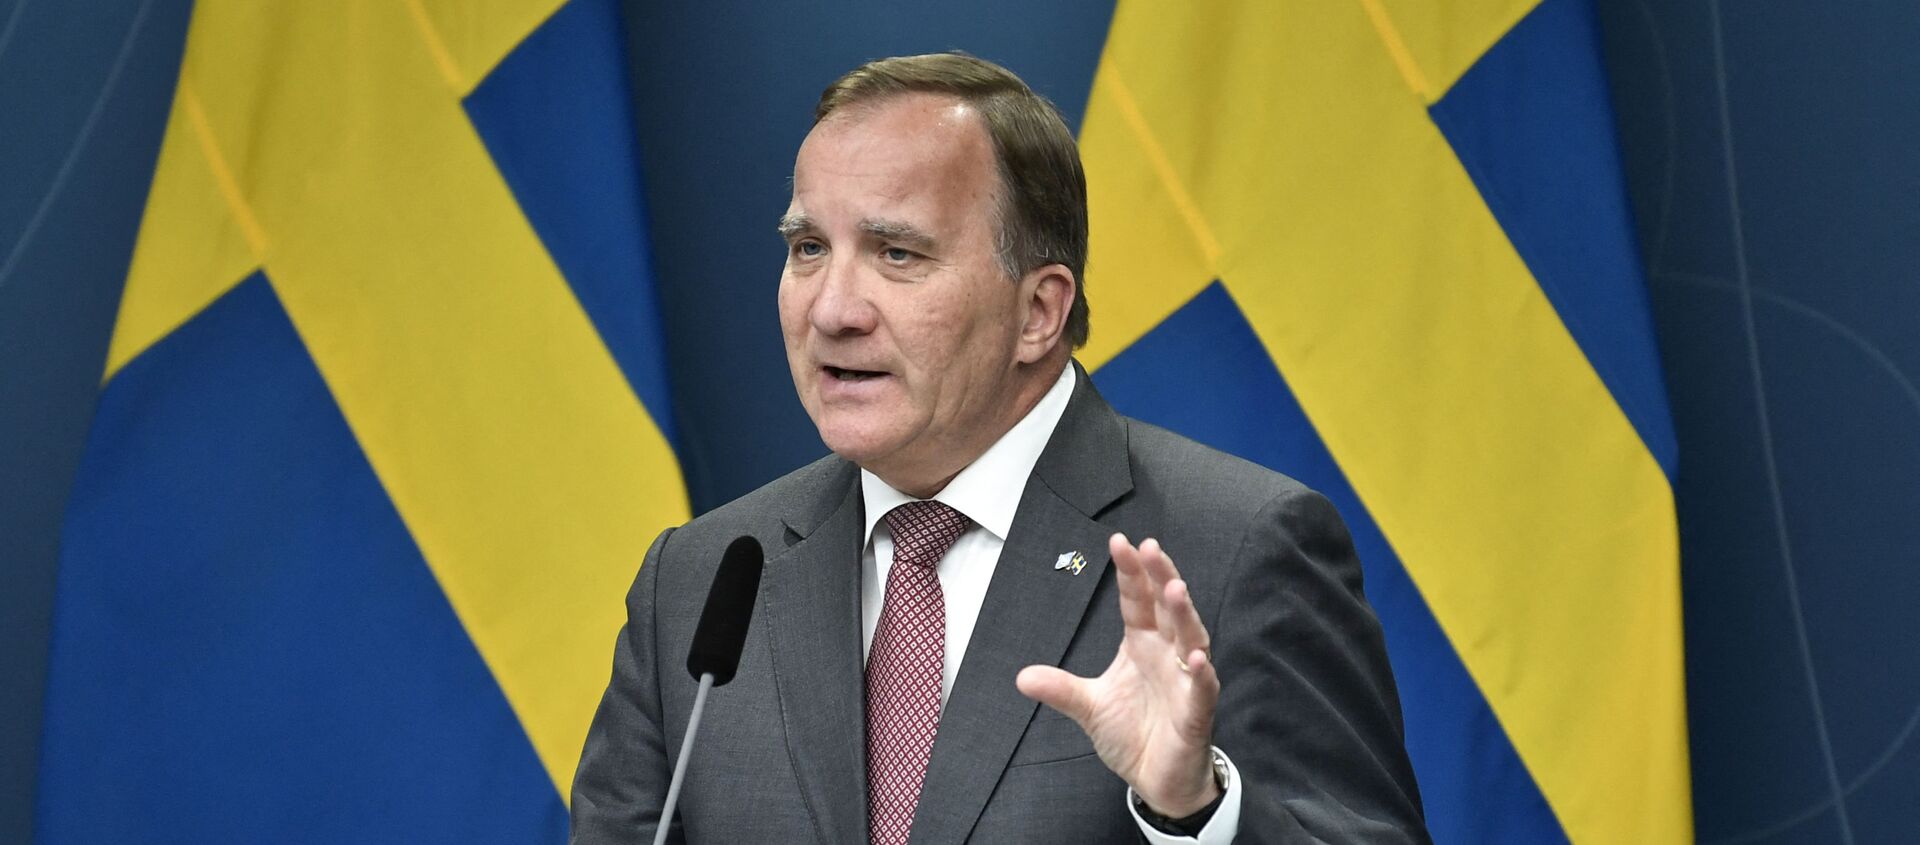 Sweden's Prime Minister Stefan Lofven speaks on June 17, 2021 during a press conference at Rosenbad in Stockholm after the Sweden Democrats' request for a vote on a motion of censure.  - Sputnik International, 1920, 18.06.2021